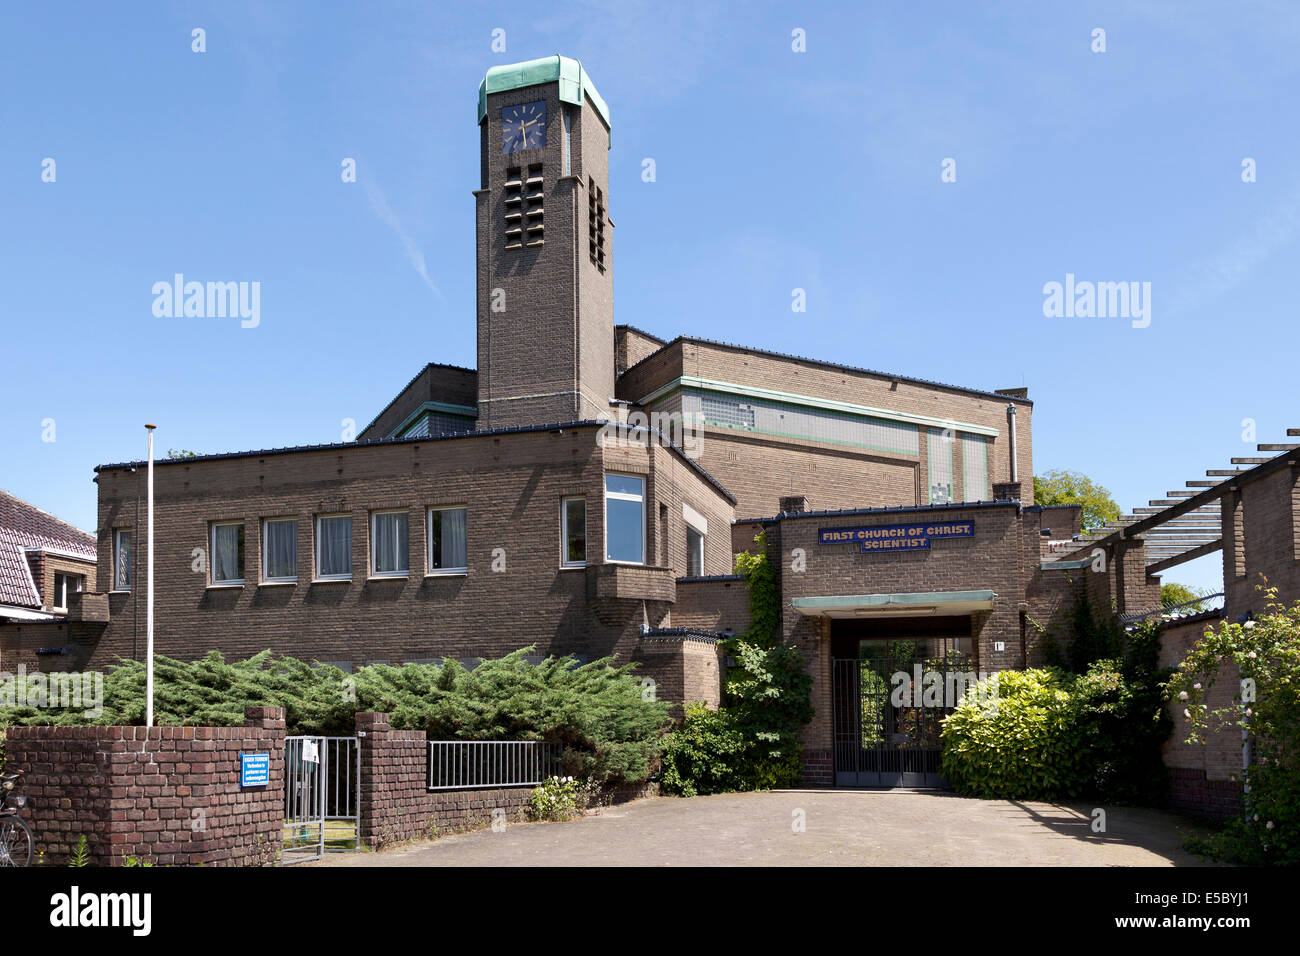 Première Église du Christ Scientist bâtiment conçu par H.P. Berlage de La Haye, aux Pays-Bas Banque D'Images